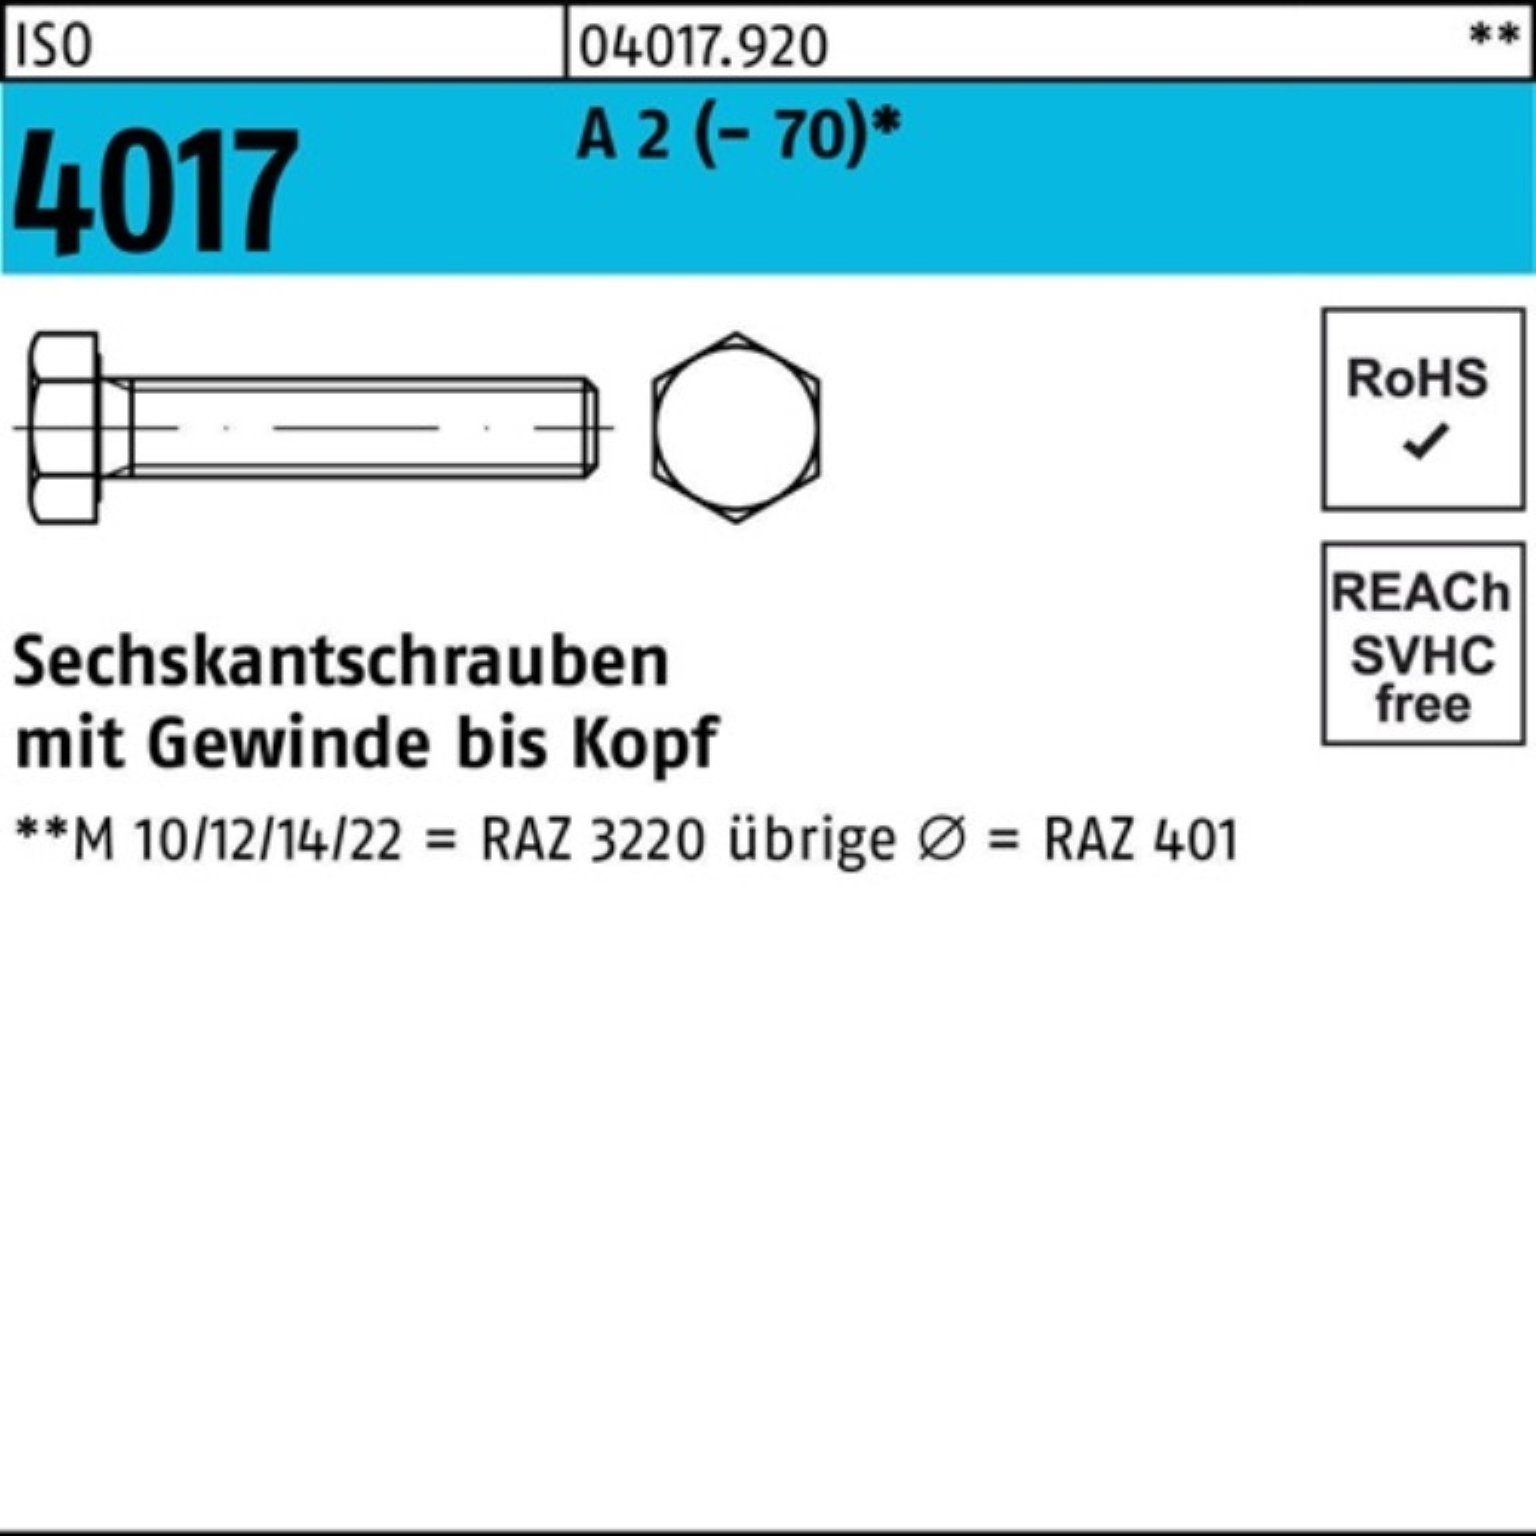 Bufab Sechskantschraube 200er Pack Sechskantschraube ISO M4x A 4017 200 2 ISO Stück 12 VG 401